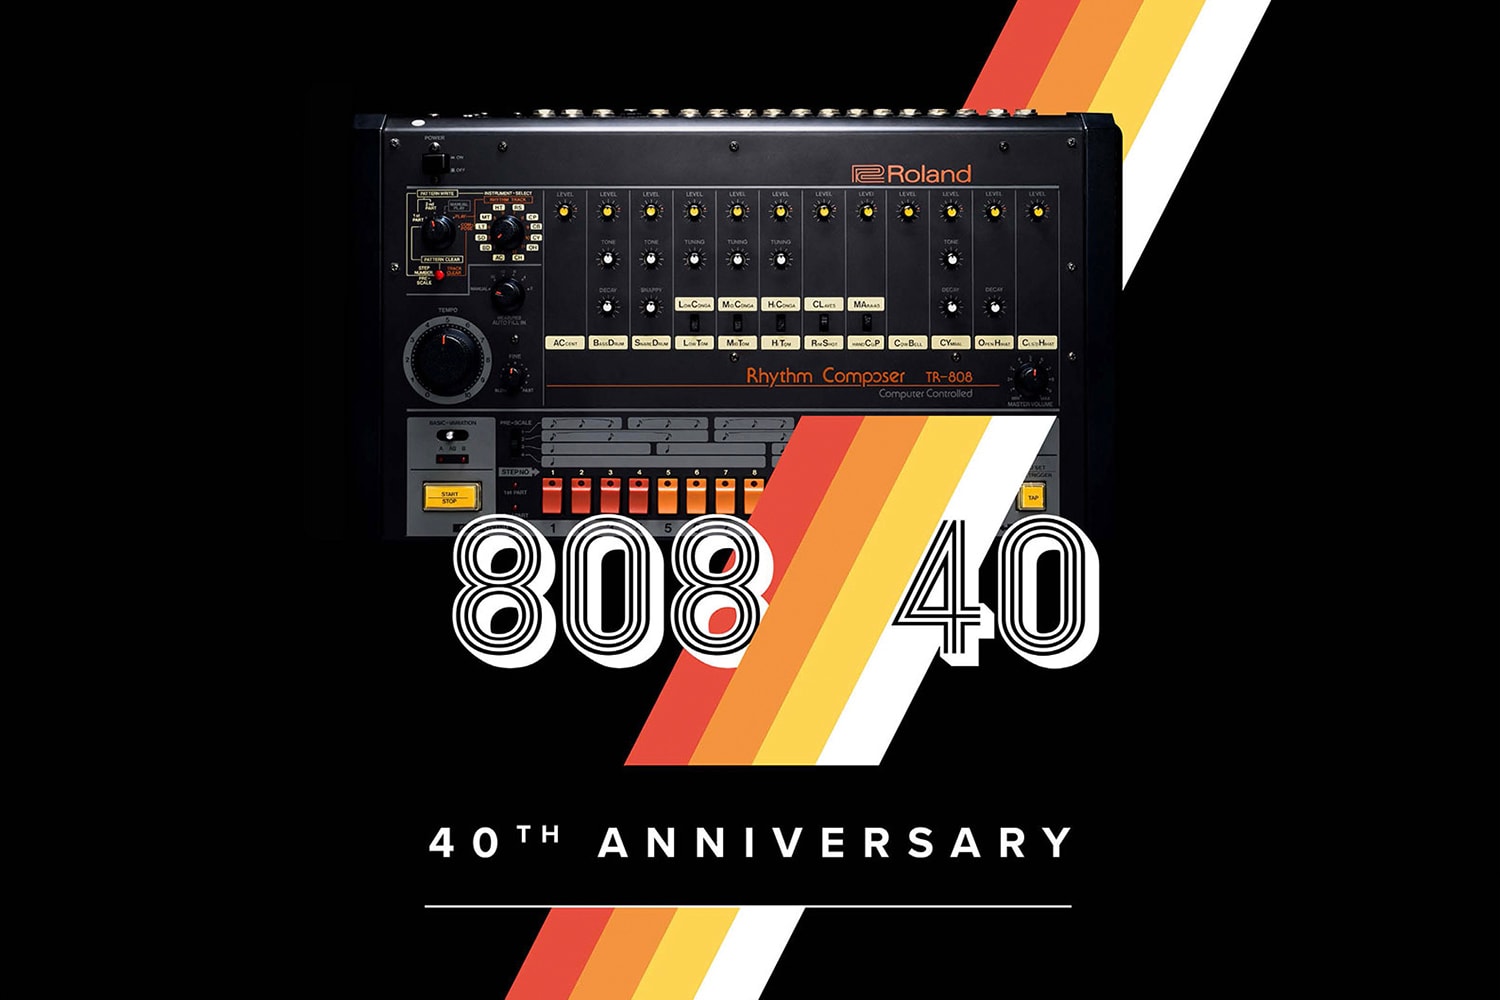 回顧傳奇 TR-808 鼓機發展歷程，10 首 808 風格單曲推介